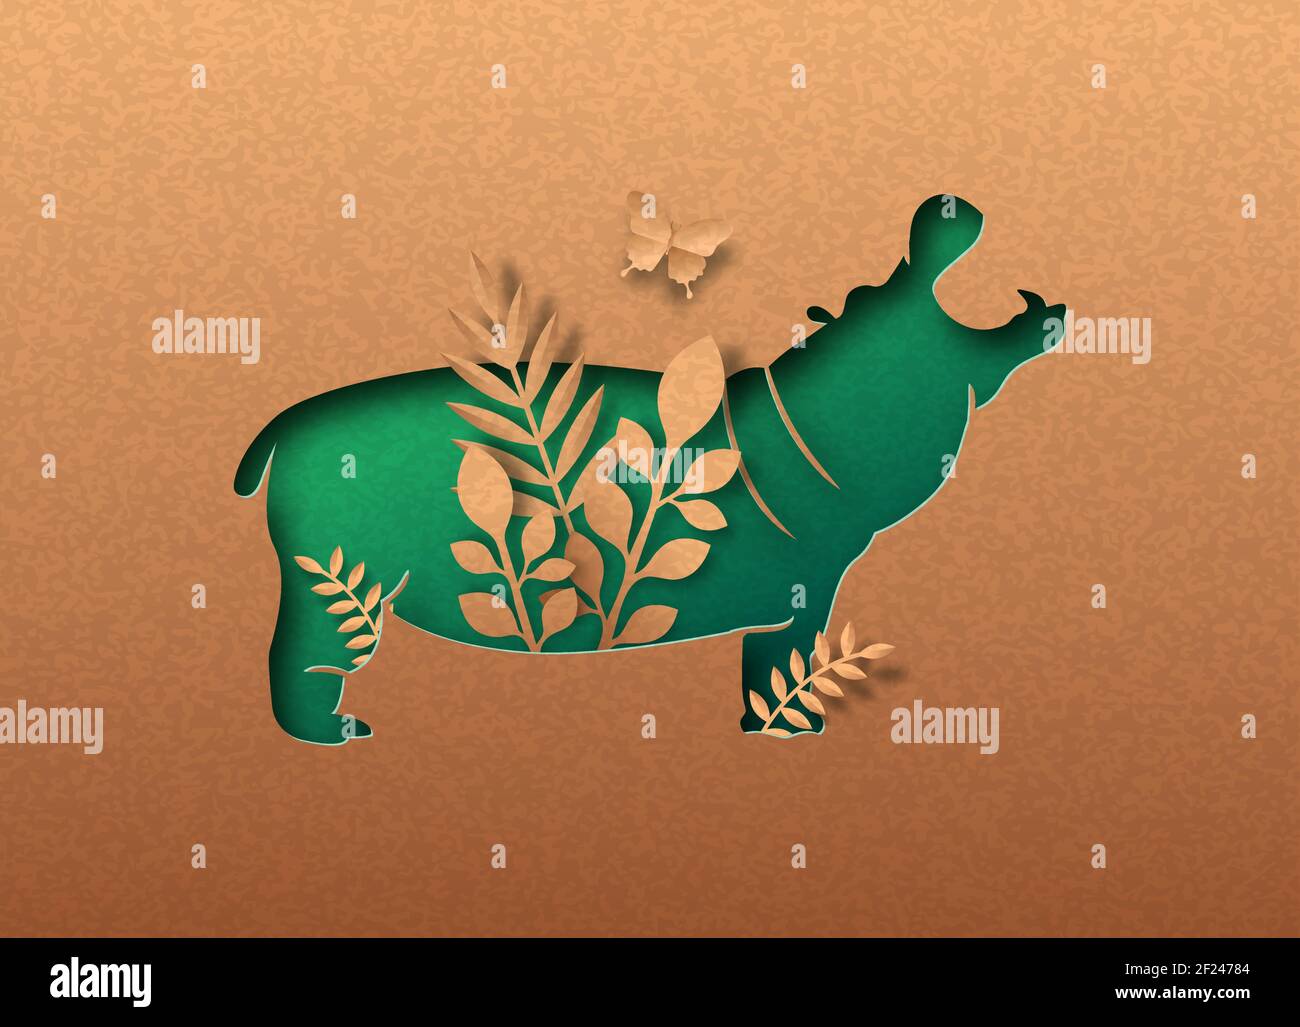 Vert hippopotame animal isolé silhouette coupée de papier avec feuille de plante tropicale à l'intérieur. Concept de découpe de texture de papier recyclé pour l'afrique safari, sauvage Illustration de Vecteur